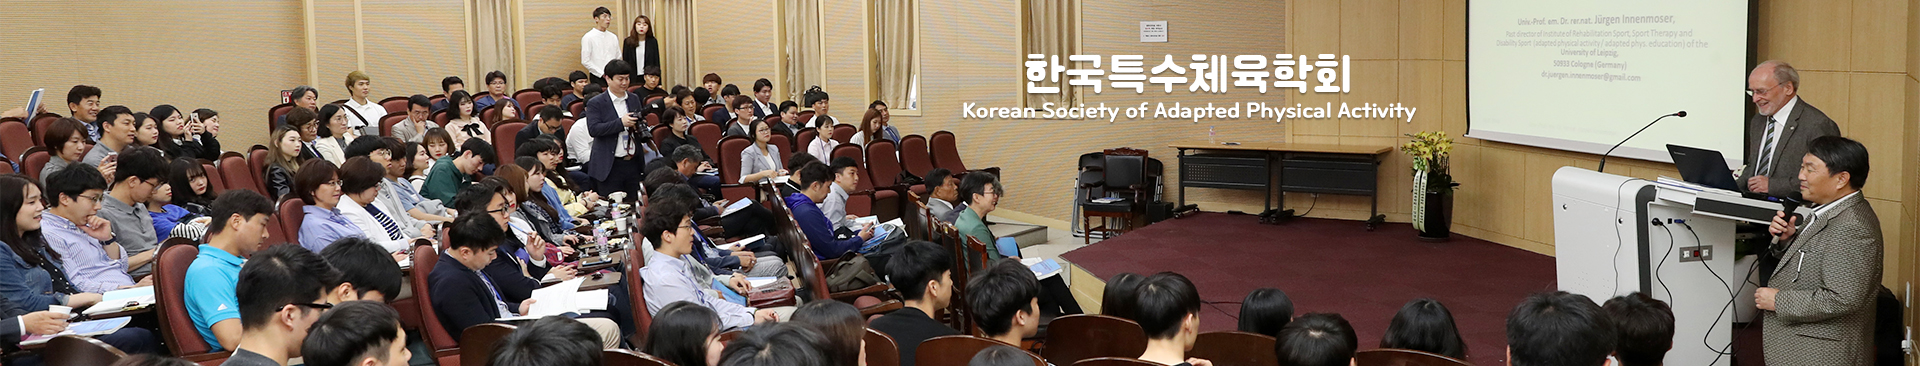 한국특수체육학회 Korean Society of Adapted Physical Activity